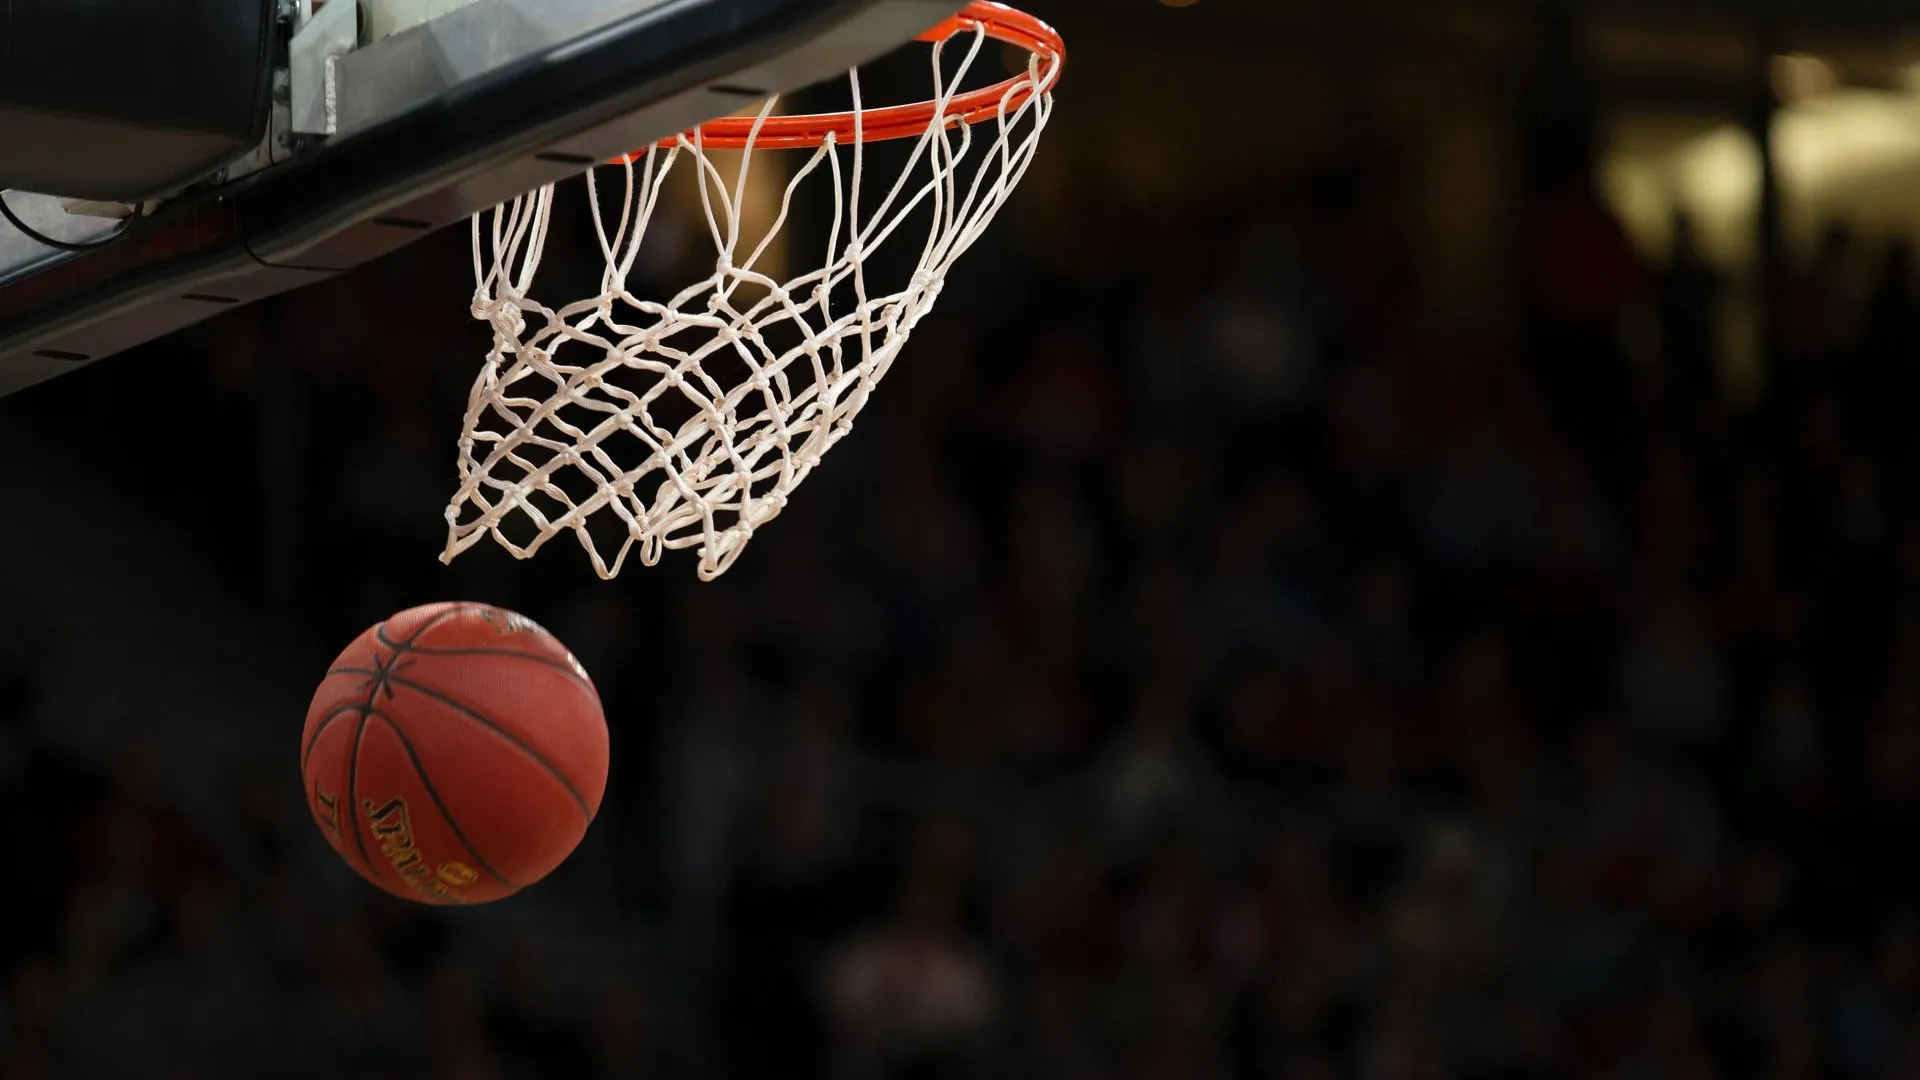 Финал регионального этапа школьной баскетбольной лиги пройдет в городе Фрязино 4 февраля